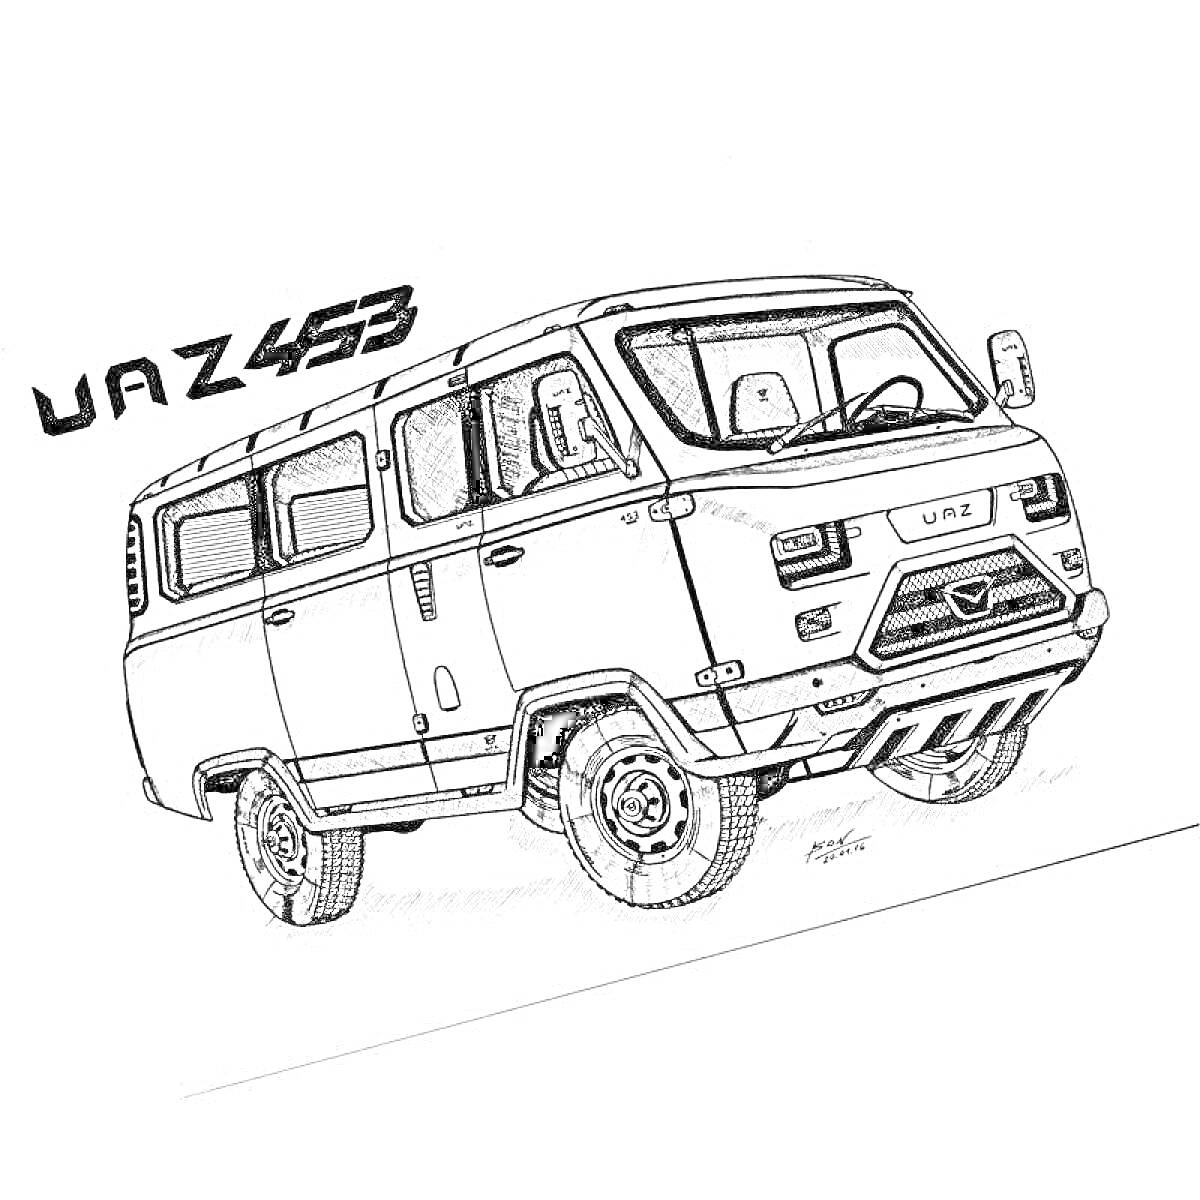 Раскраска UAZ 453 буханка, автомобиль, демонстрирующий переднюю и боковую часть кузова, написанное название модели